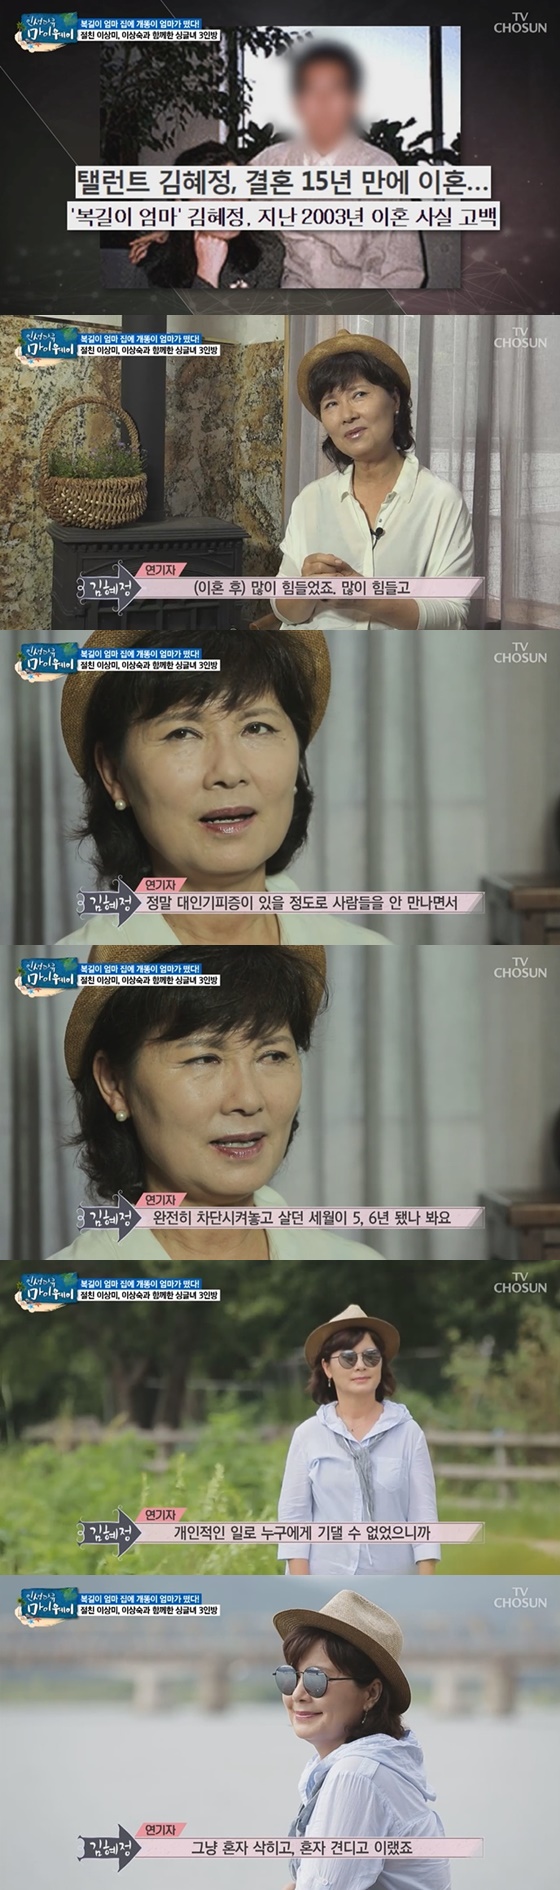 배우 김혜정이 이혼의 아픔에 대해 고백하는 모습. /사진=TV조선 교양프로그램 \'인생다큐-마이웨이\' 방송화면 